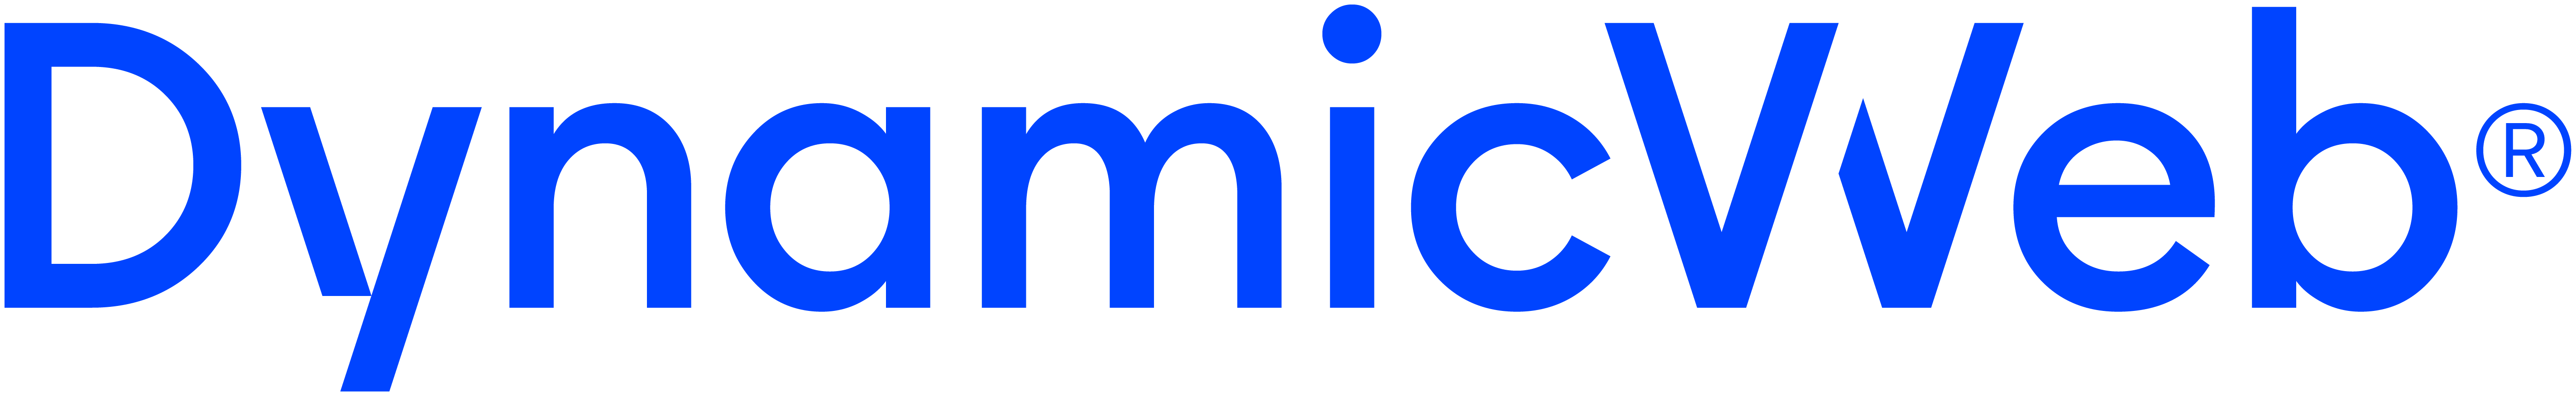 DynamicWeb logo